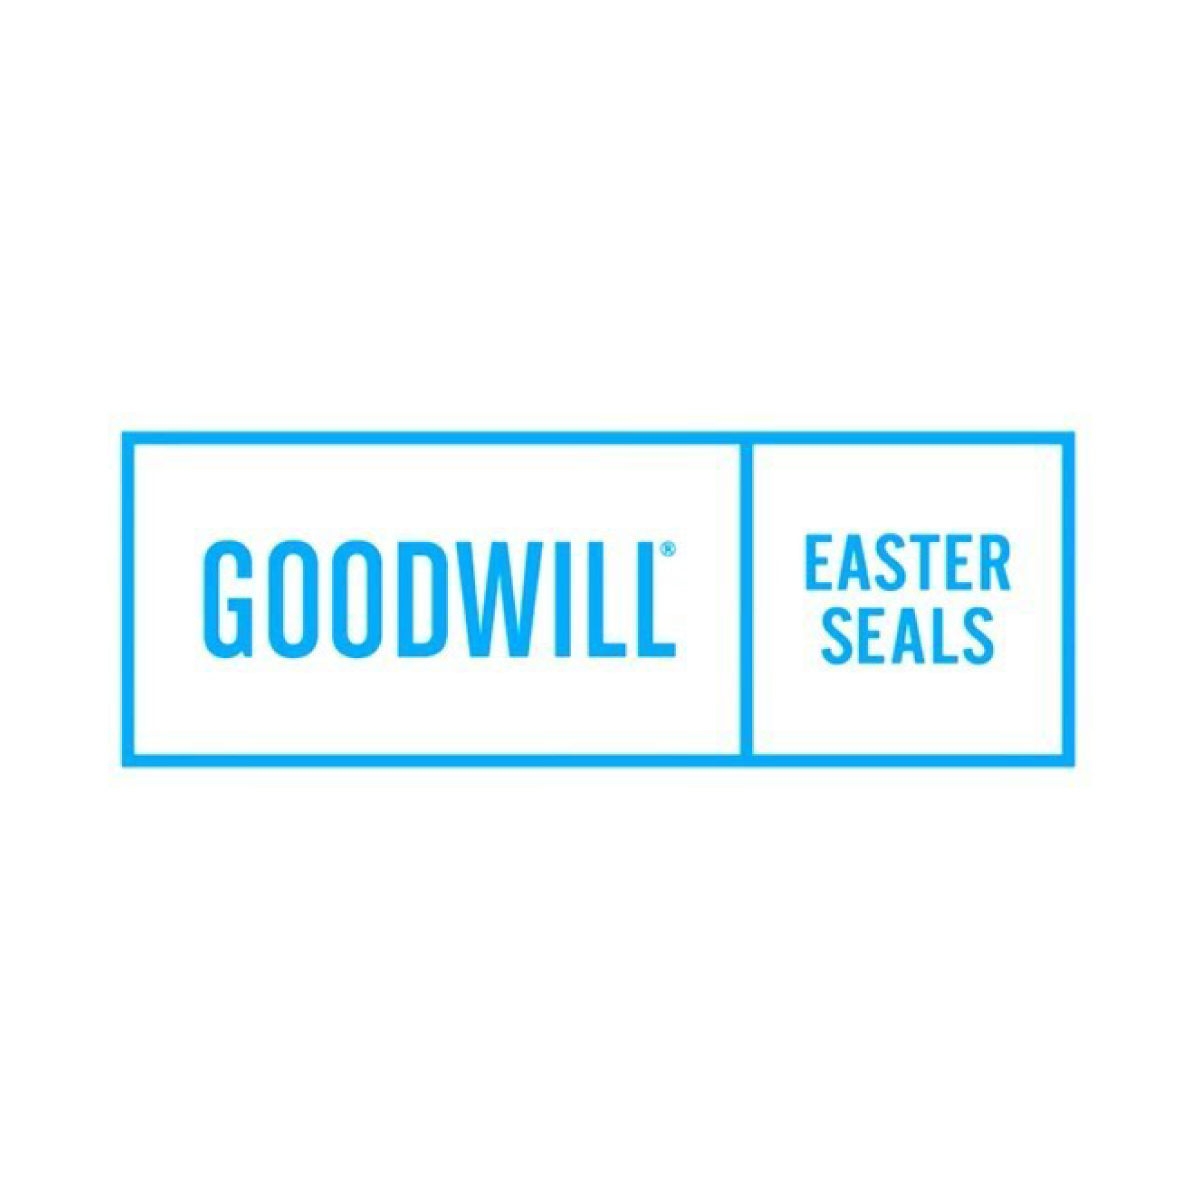 Goodwill-Easter Seals Minnesota
goodwilleasterseals.org